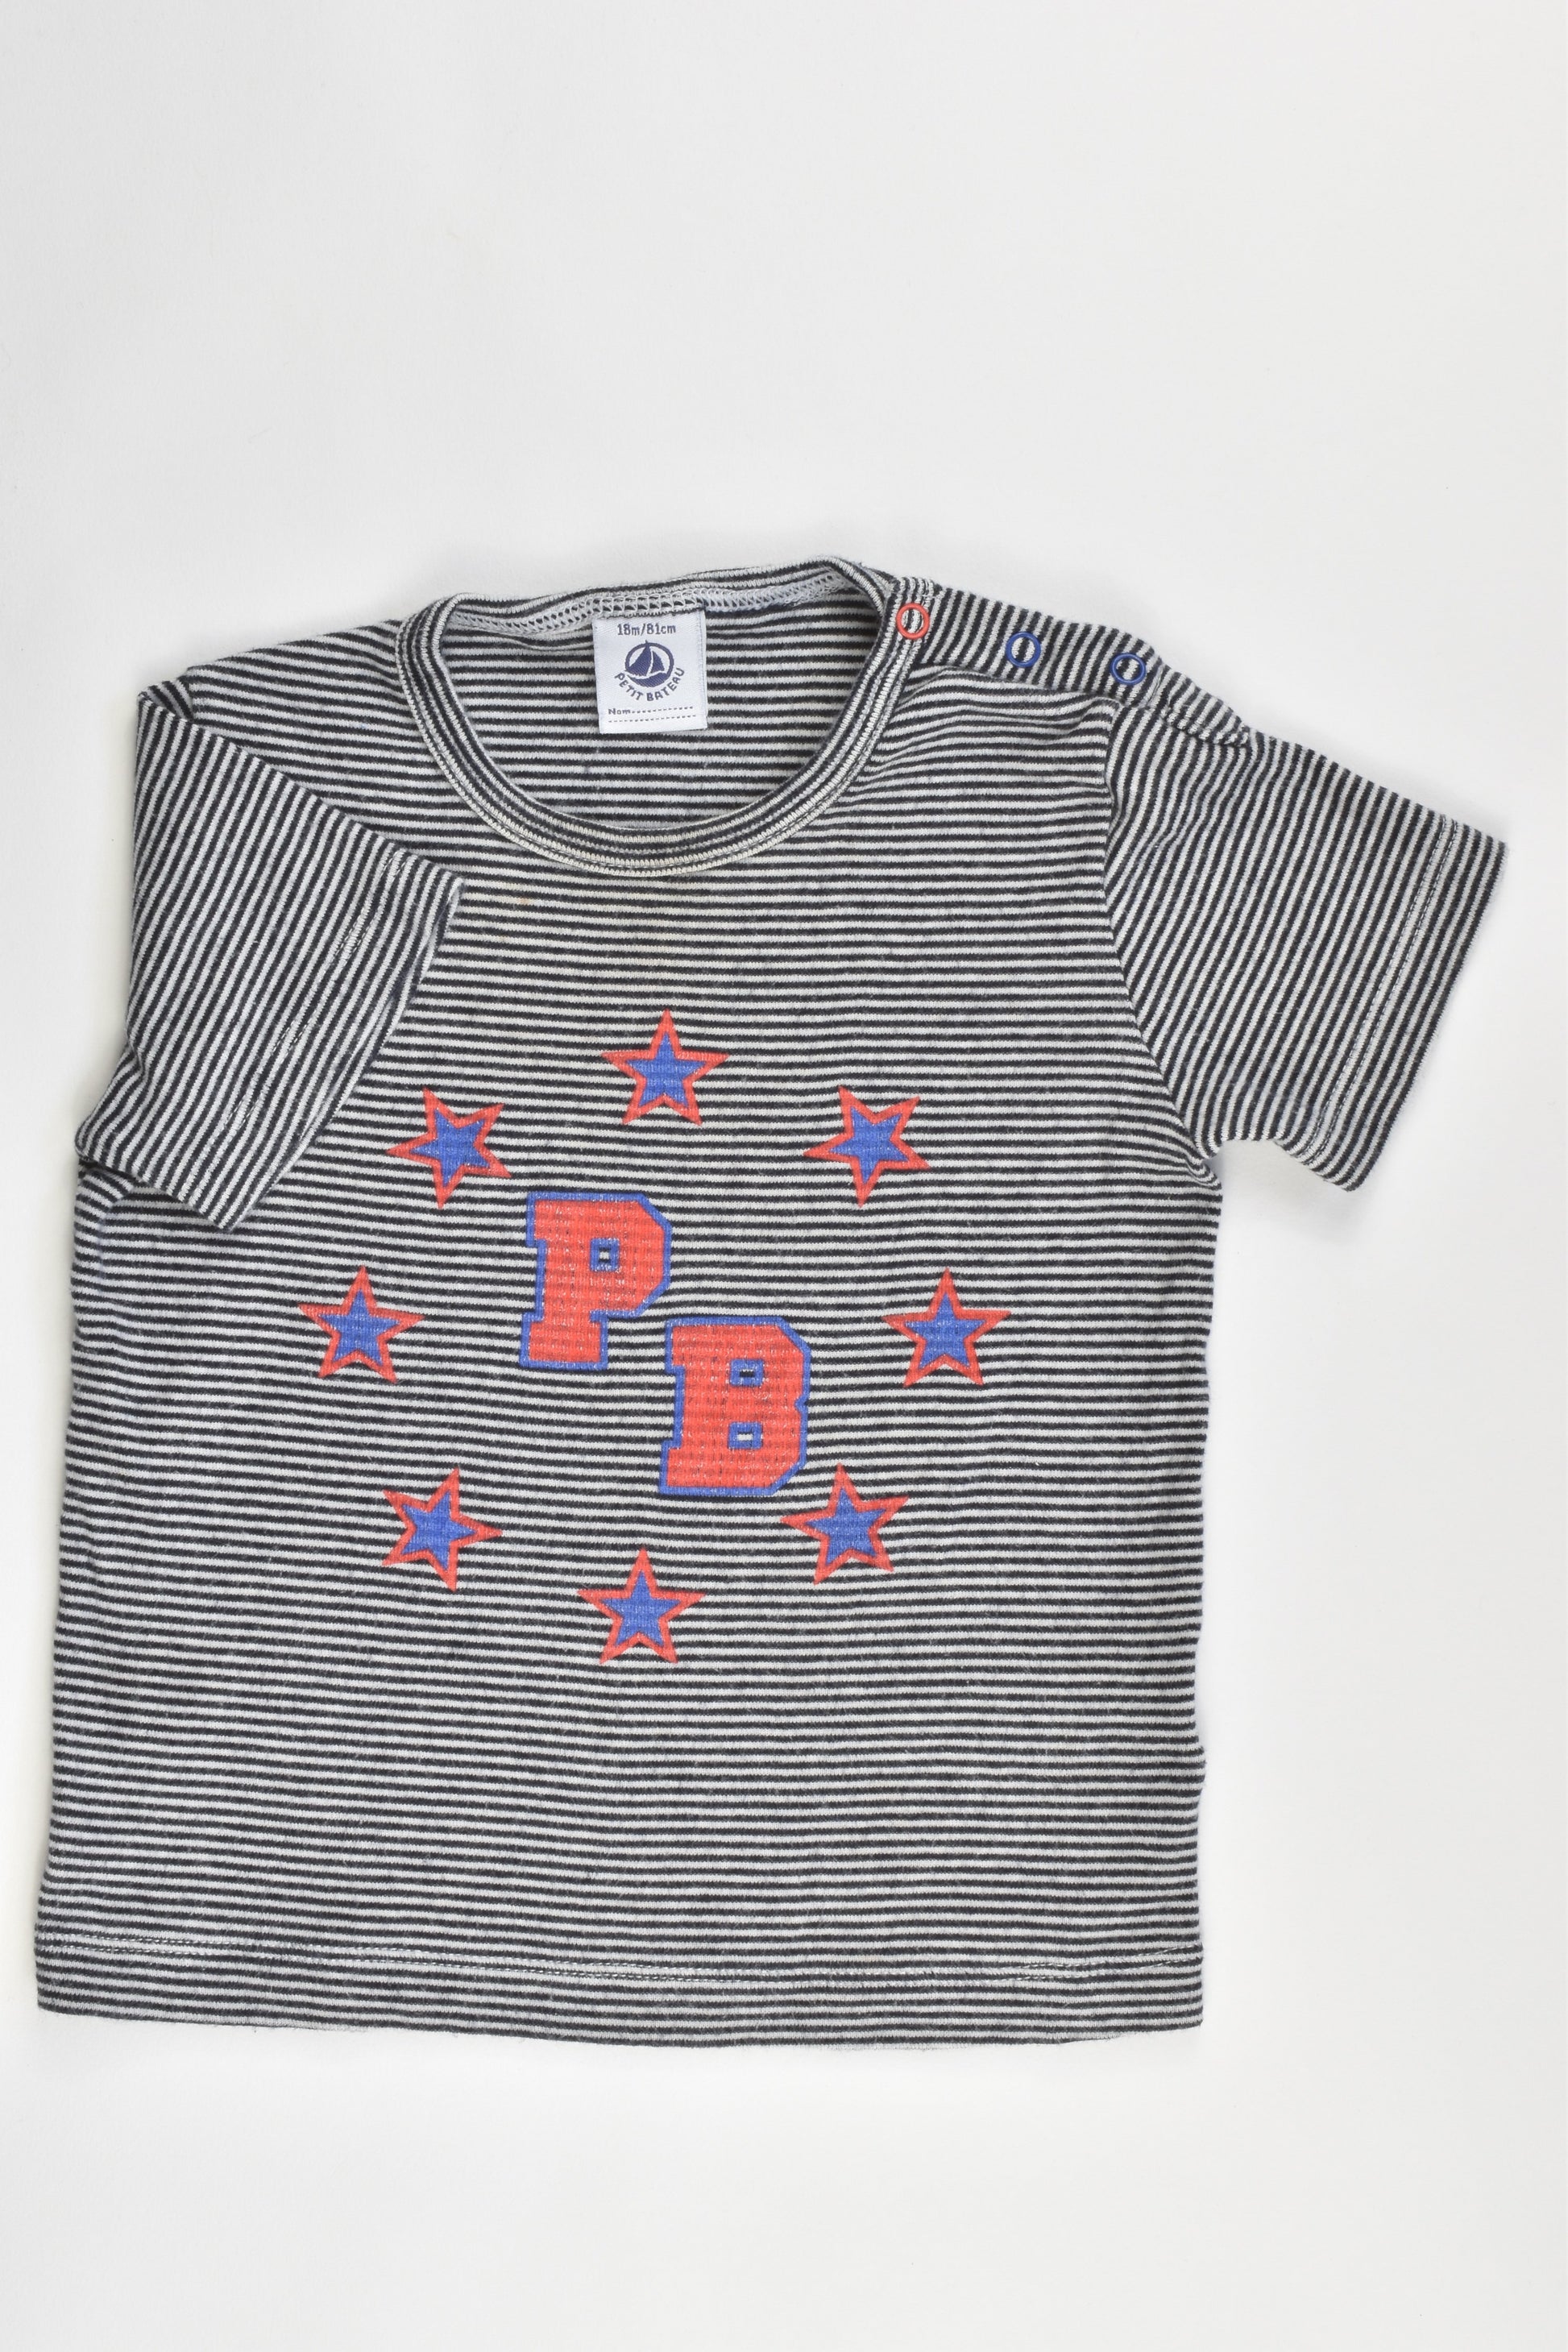 Petit Bateau (France) Size 0-1 (18 months, 81 cm) T-shirt